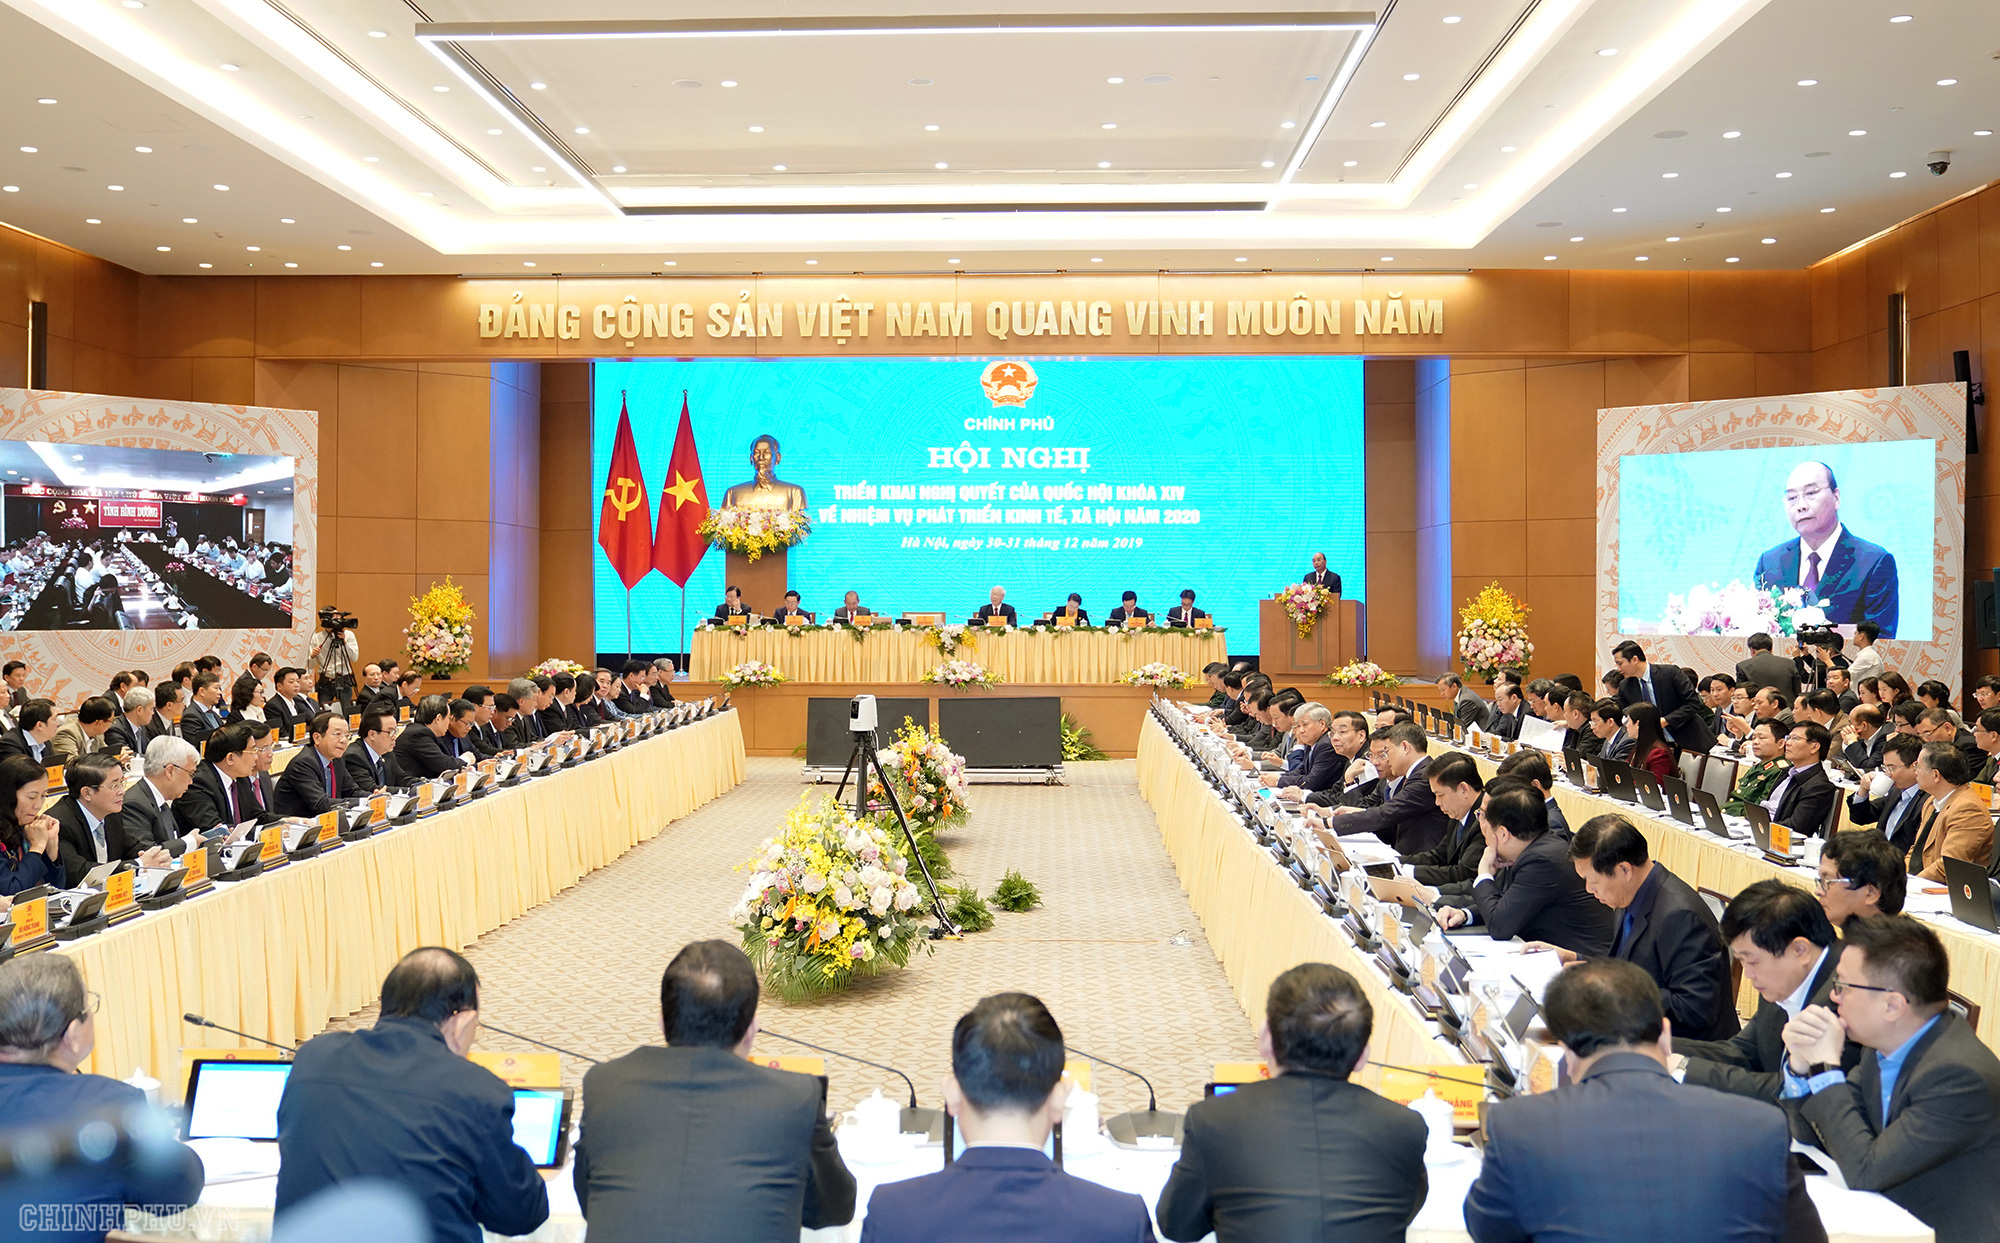 Thủ tướng Nguyễn Xuân Phúc: Sau 5 năm nhìn lại, đất ta thực sự tốt đẹp hơn bao giờ - Ảnh 1.